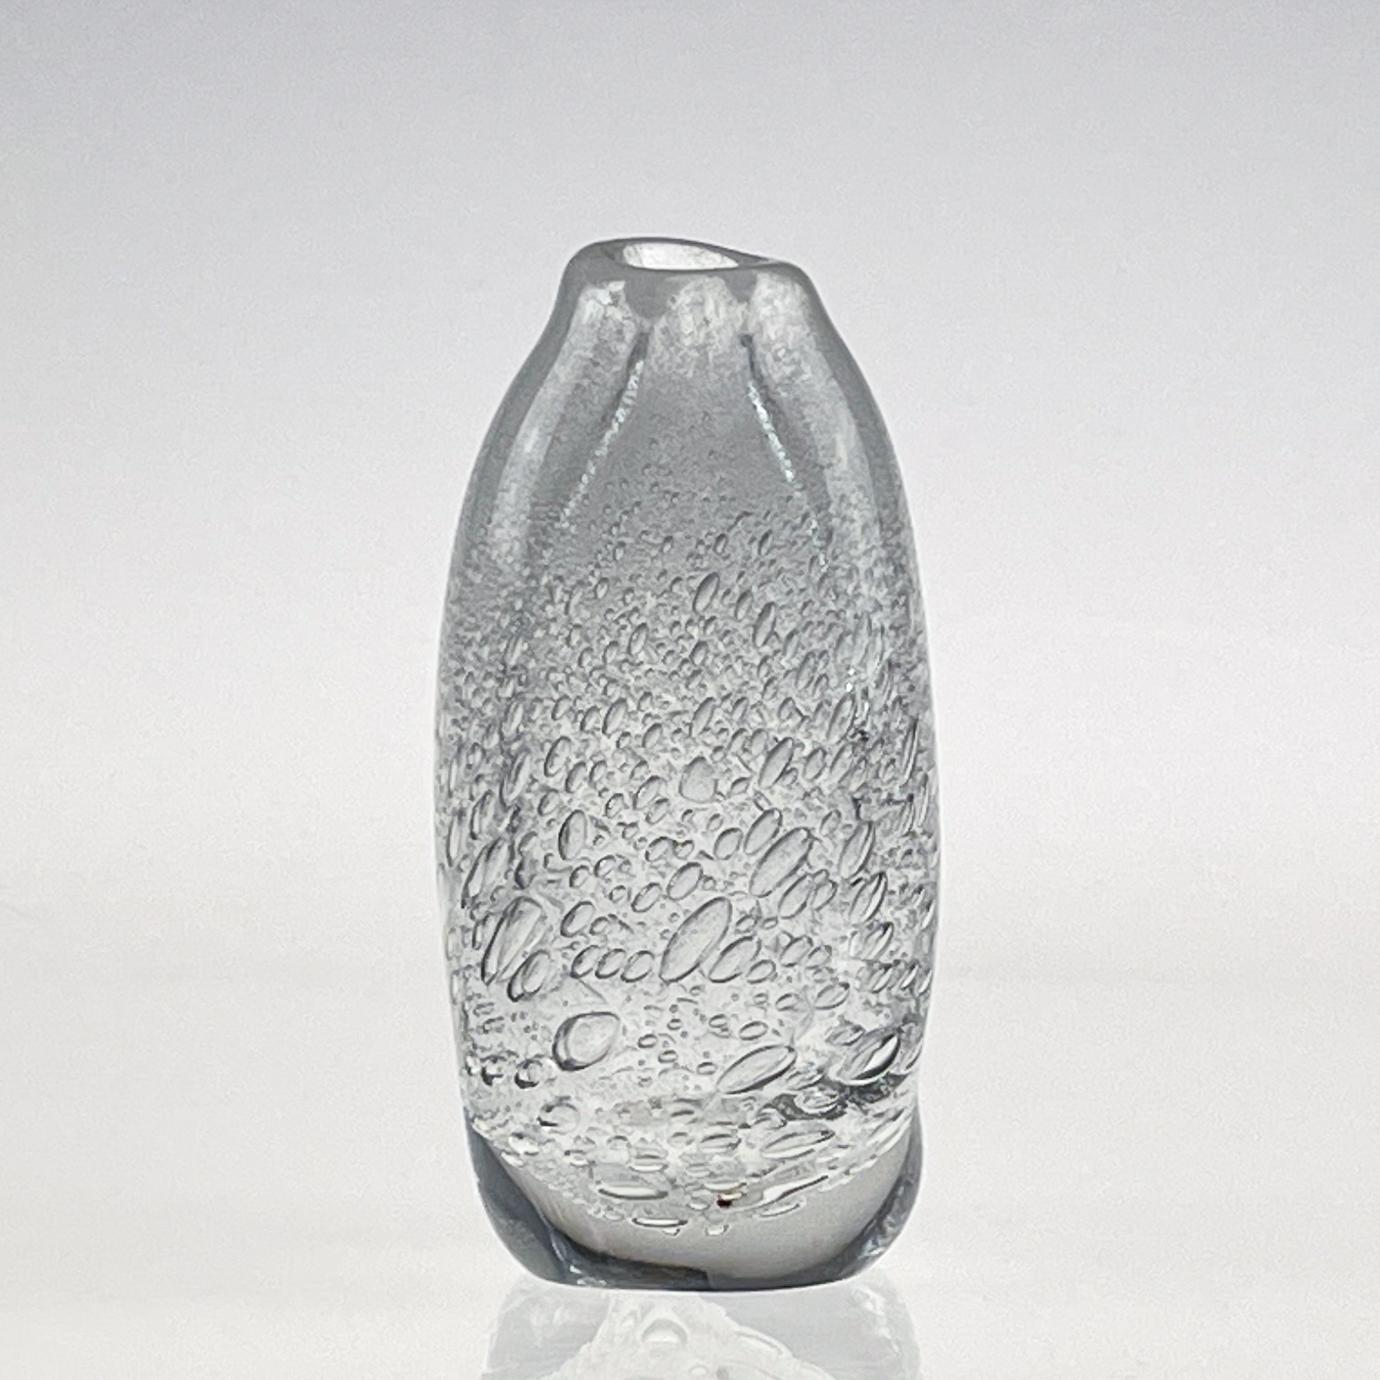 Finnish Scandinavian Modern Tapio Wirkkala Crystal Glass Art Vase Handblown Iittala